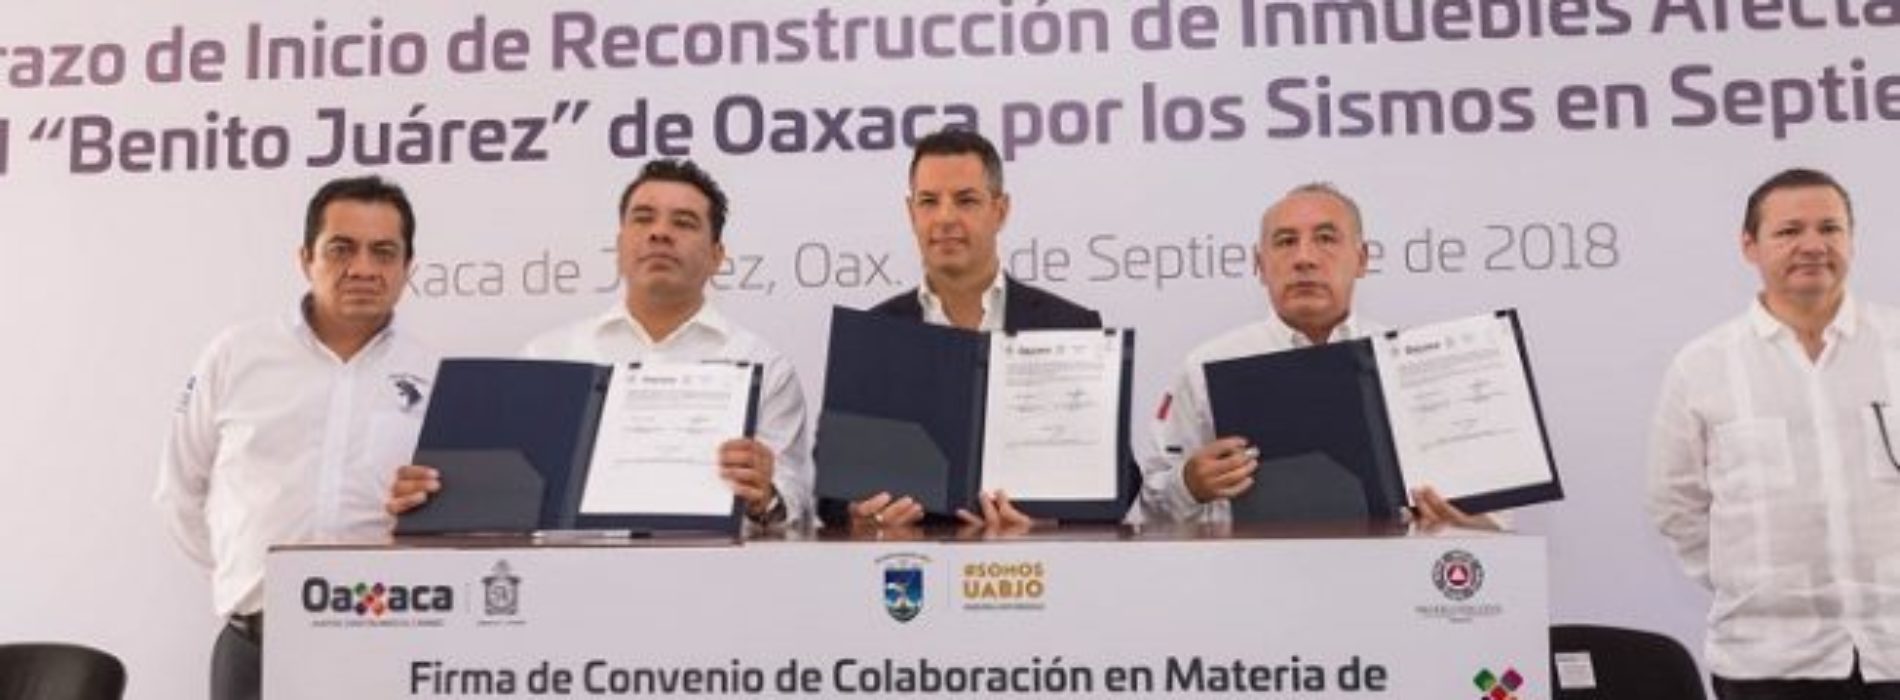 Invierte Gobierno de Oaxaca más de 215 MDP en reconstrucción
de inmuebles de la UABJO